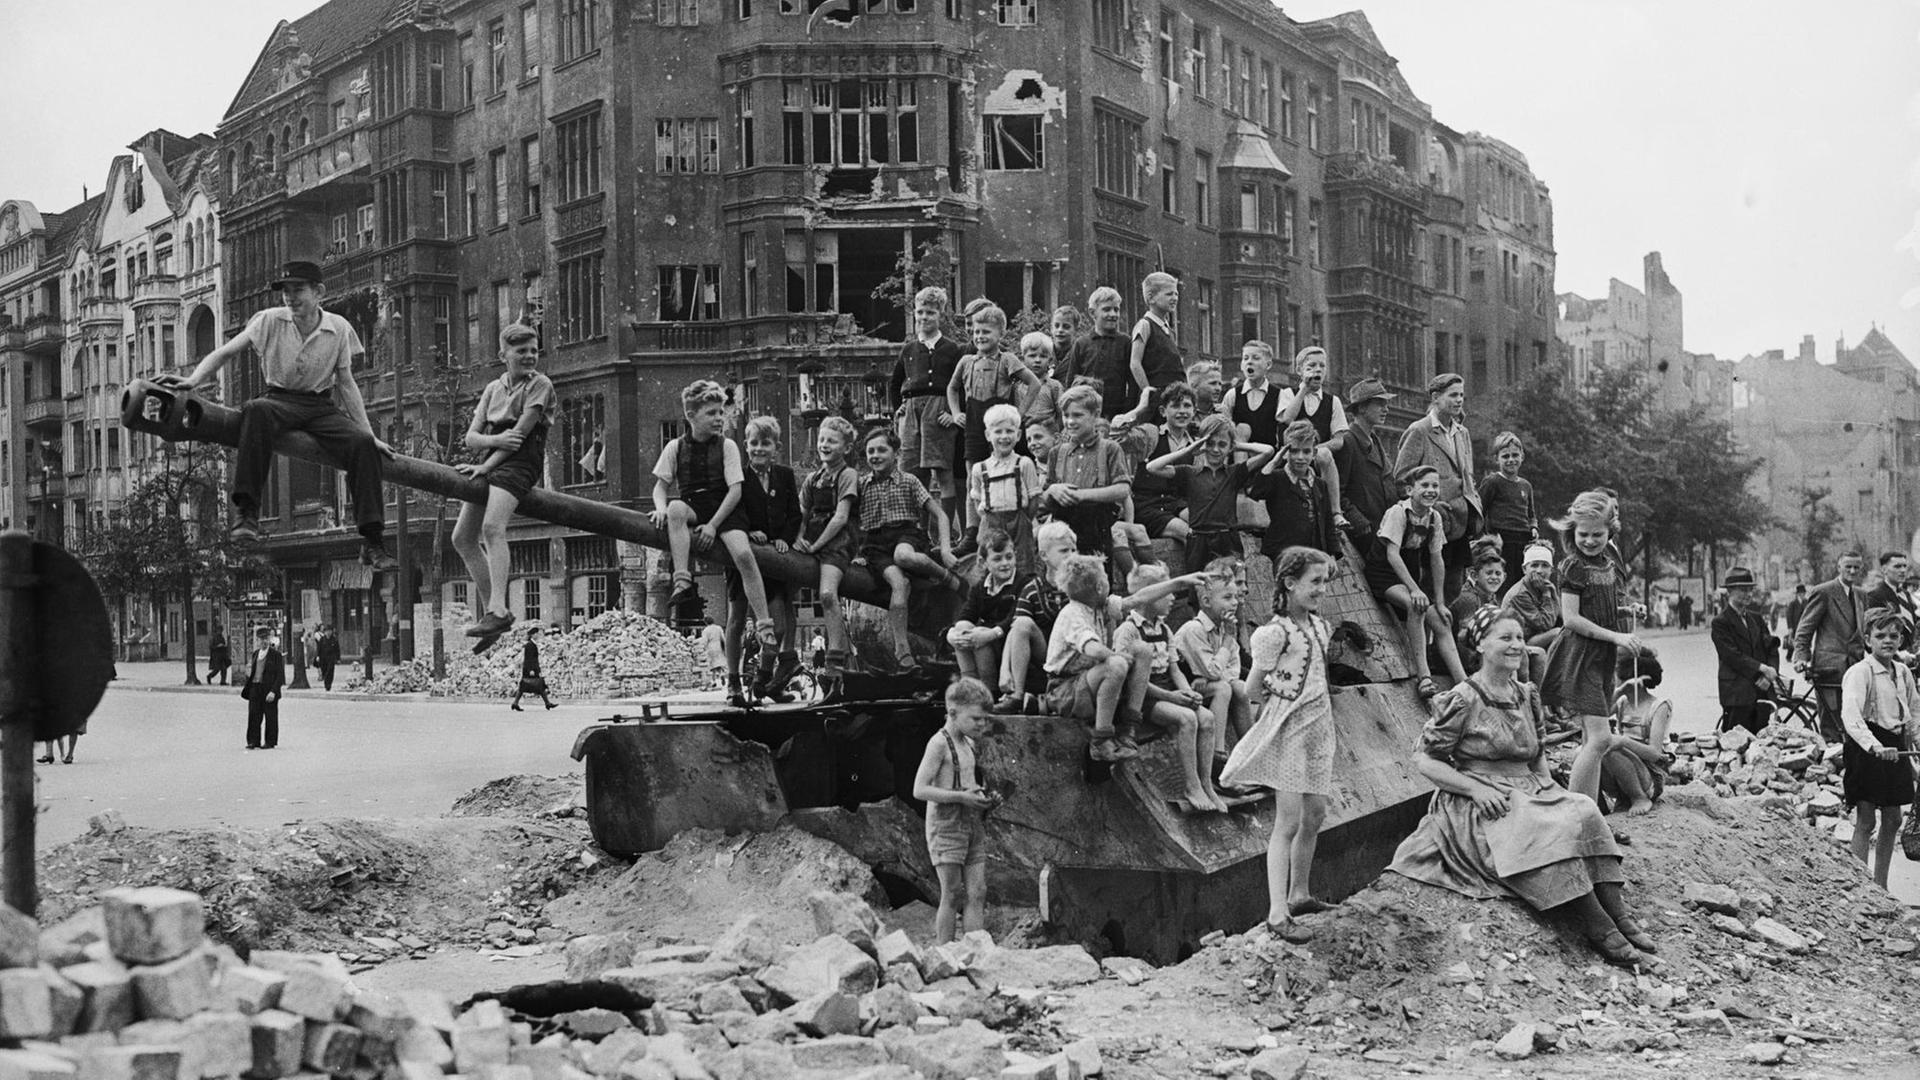 Kinder spielen 1945 in Berlin auf einem alten Panzer.